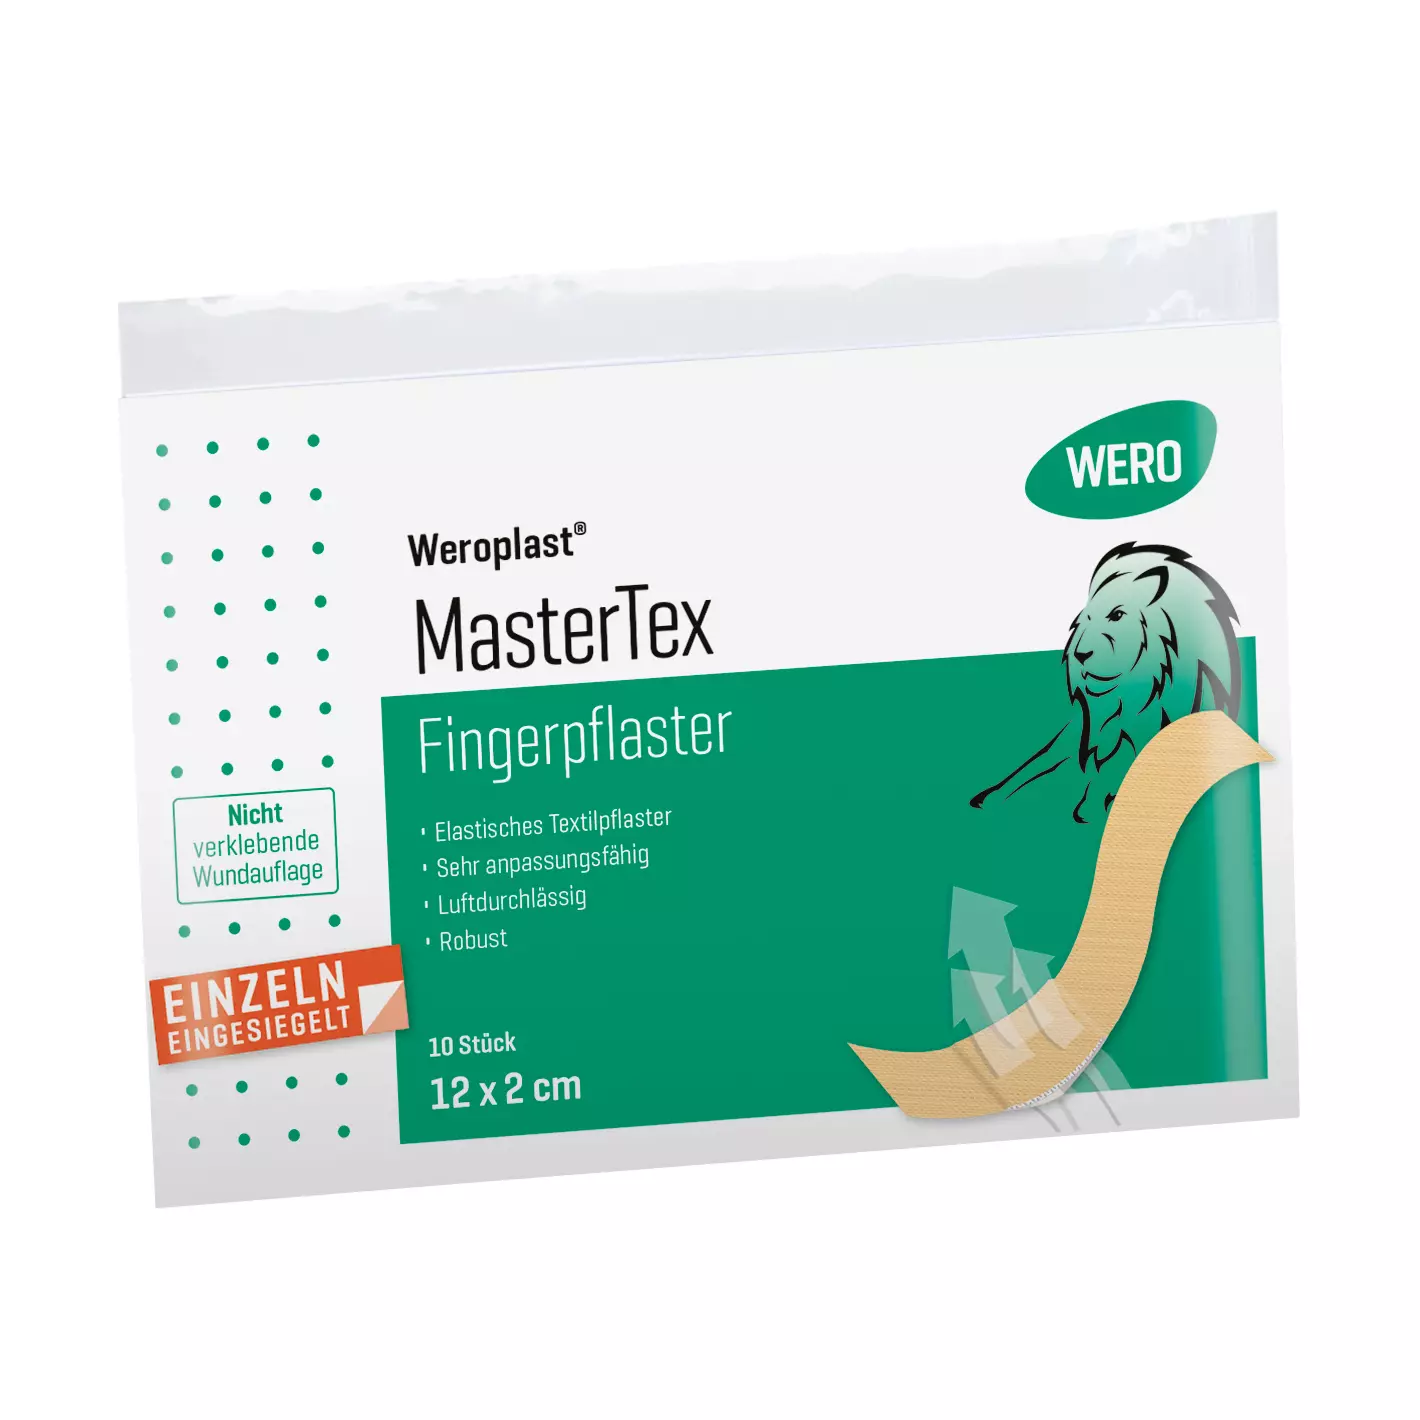 Fingerpflaster Weroplast® MasterTex - 2 cm, 10 Stk